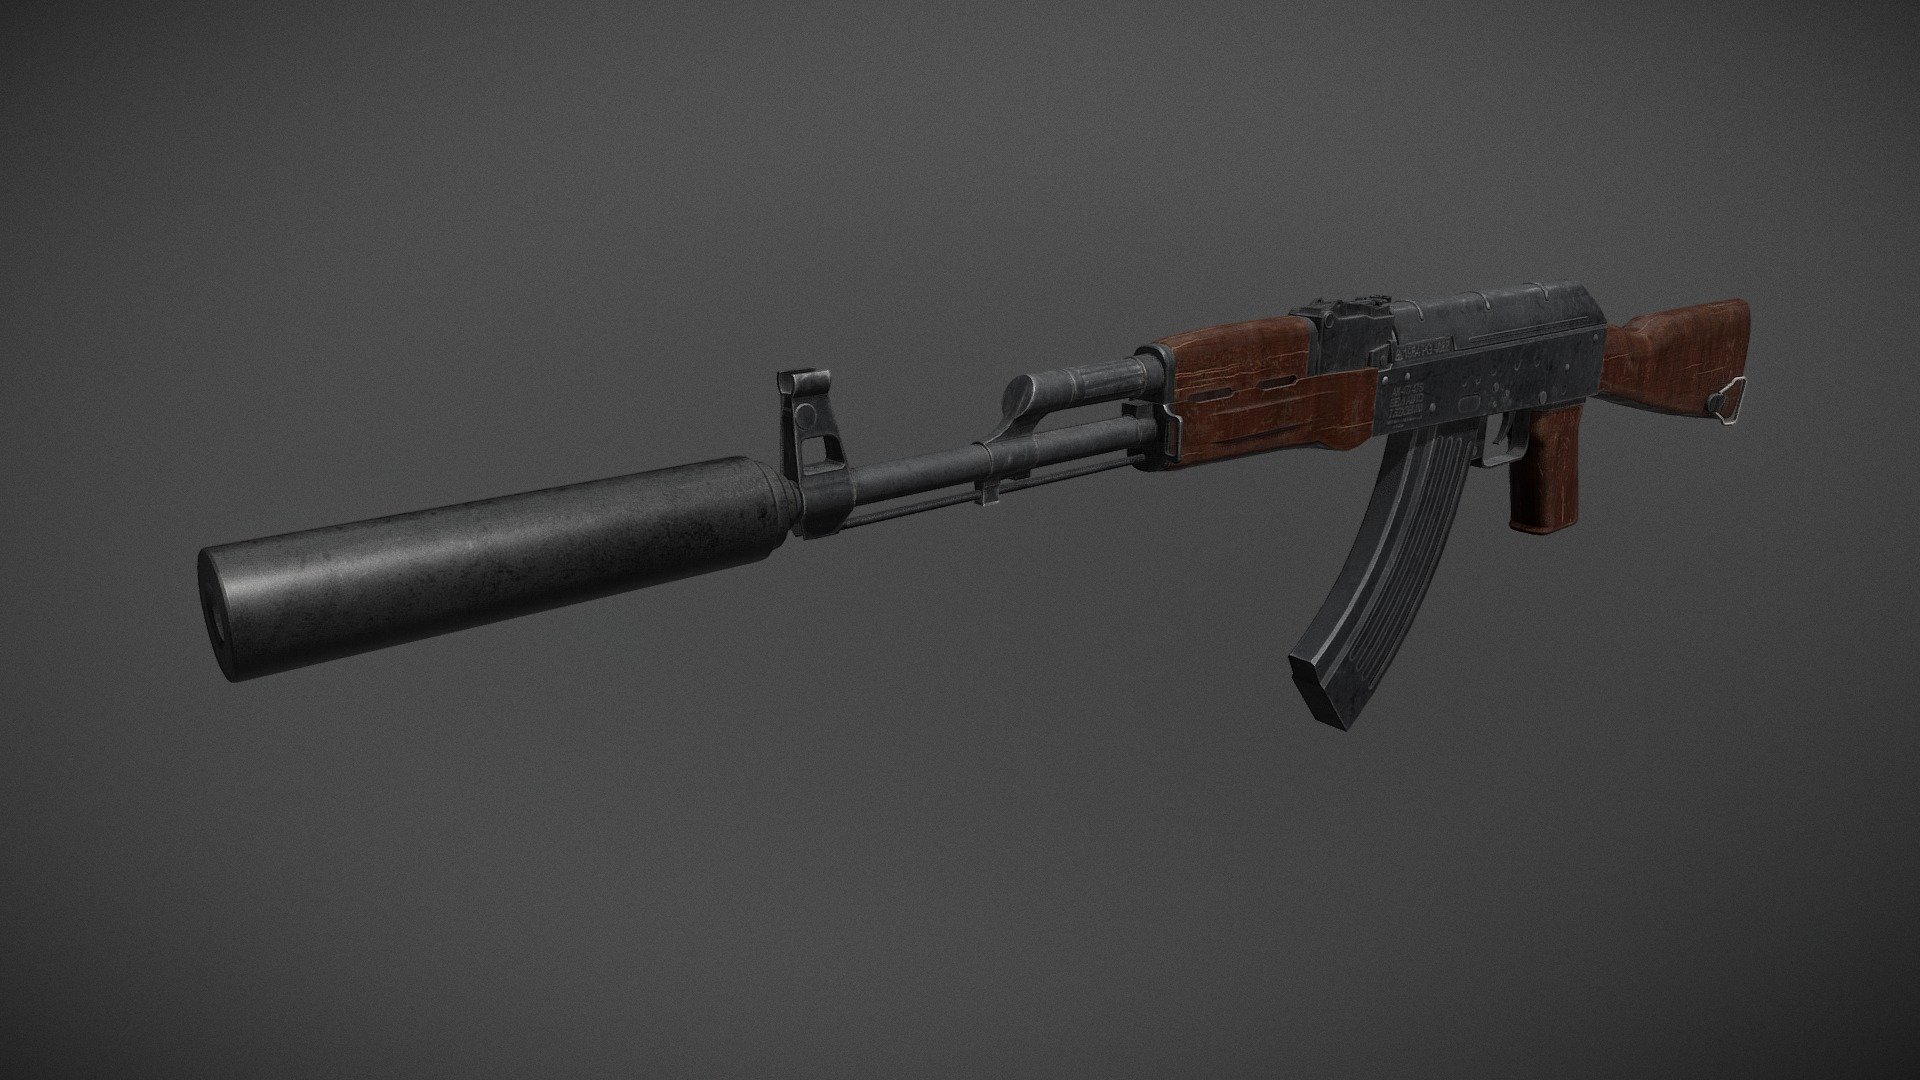 AK-47 - Assault Rifle